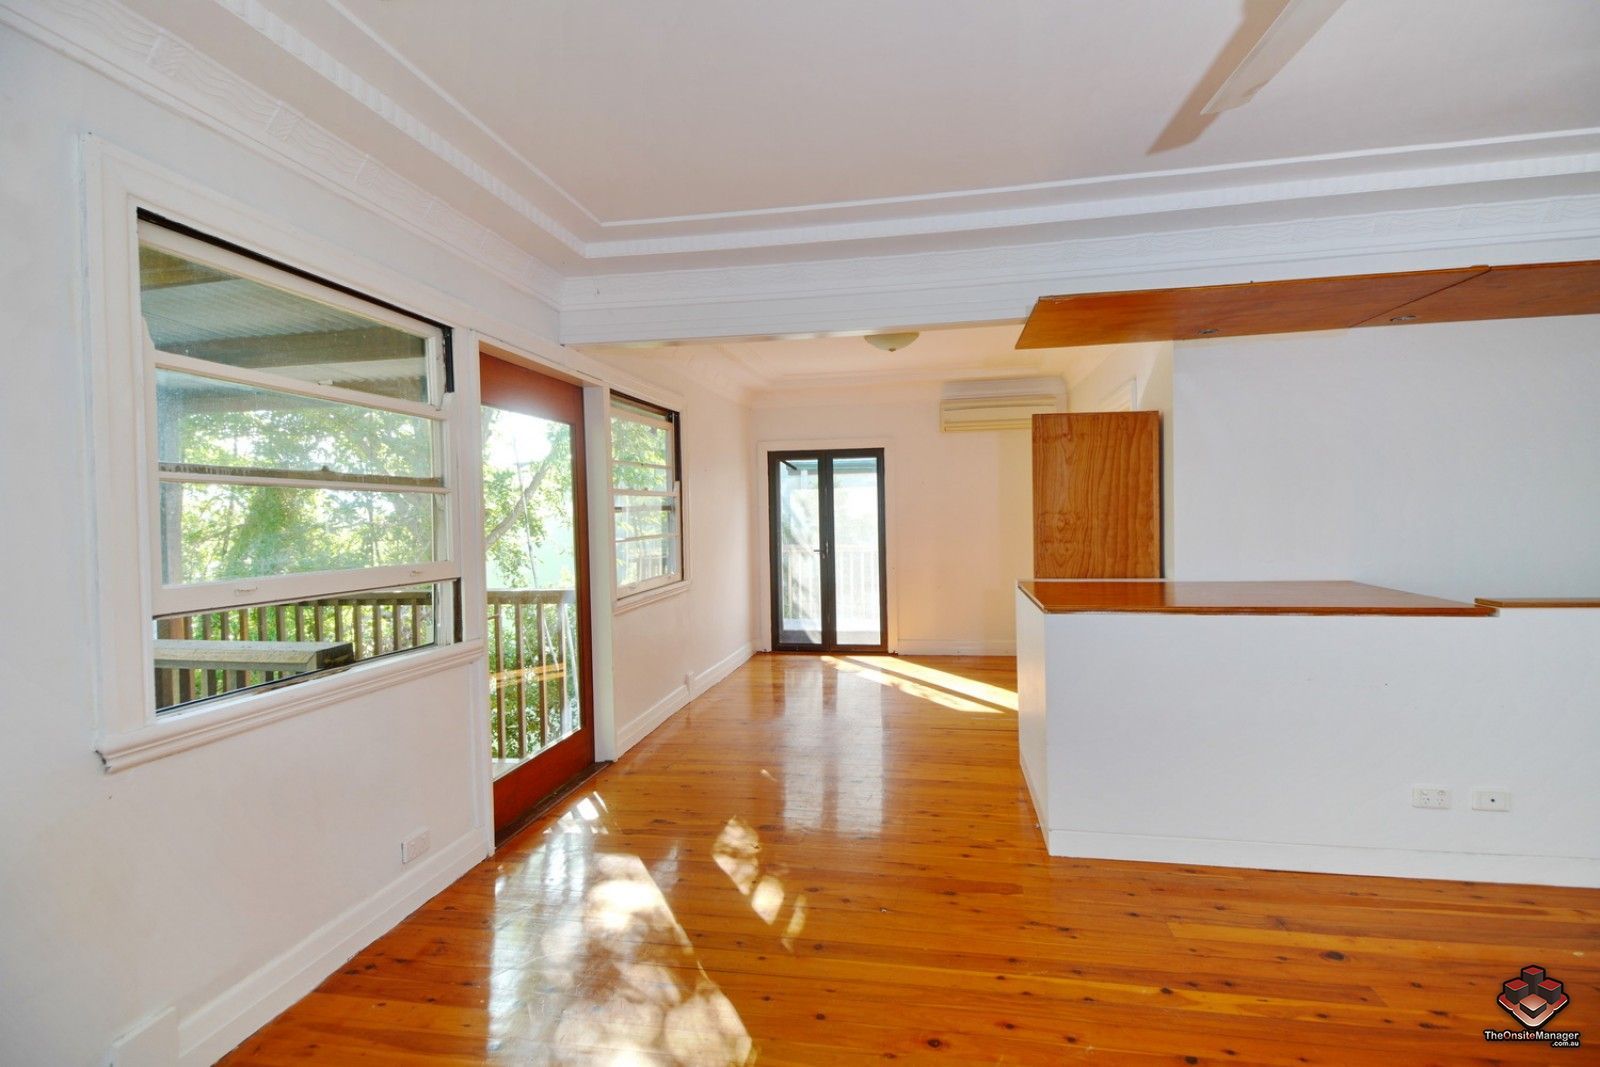 5 bedrooms House in 52 McCaul Street TARINGA QLD, 4068